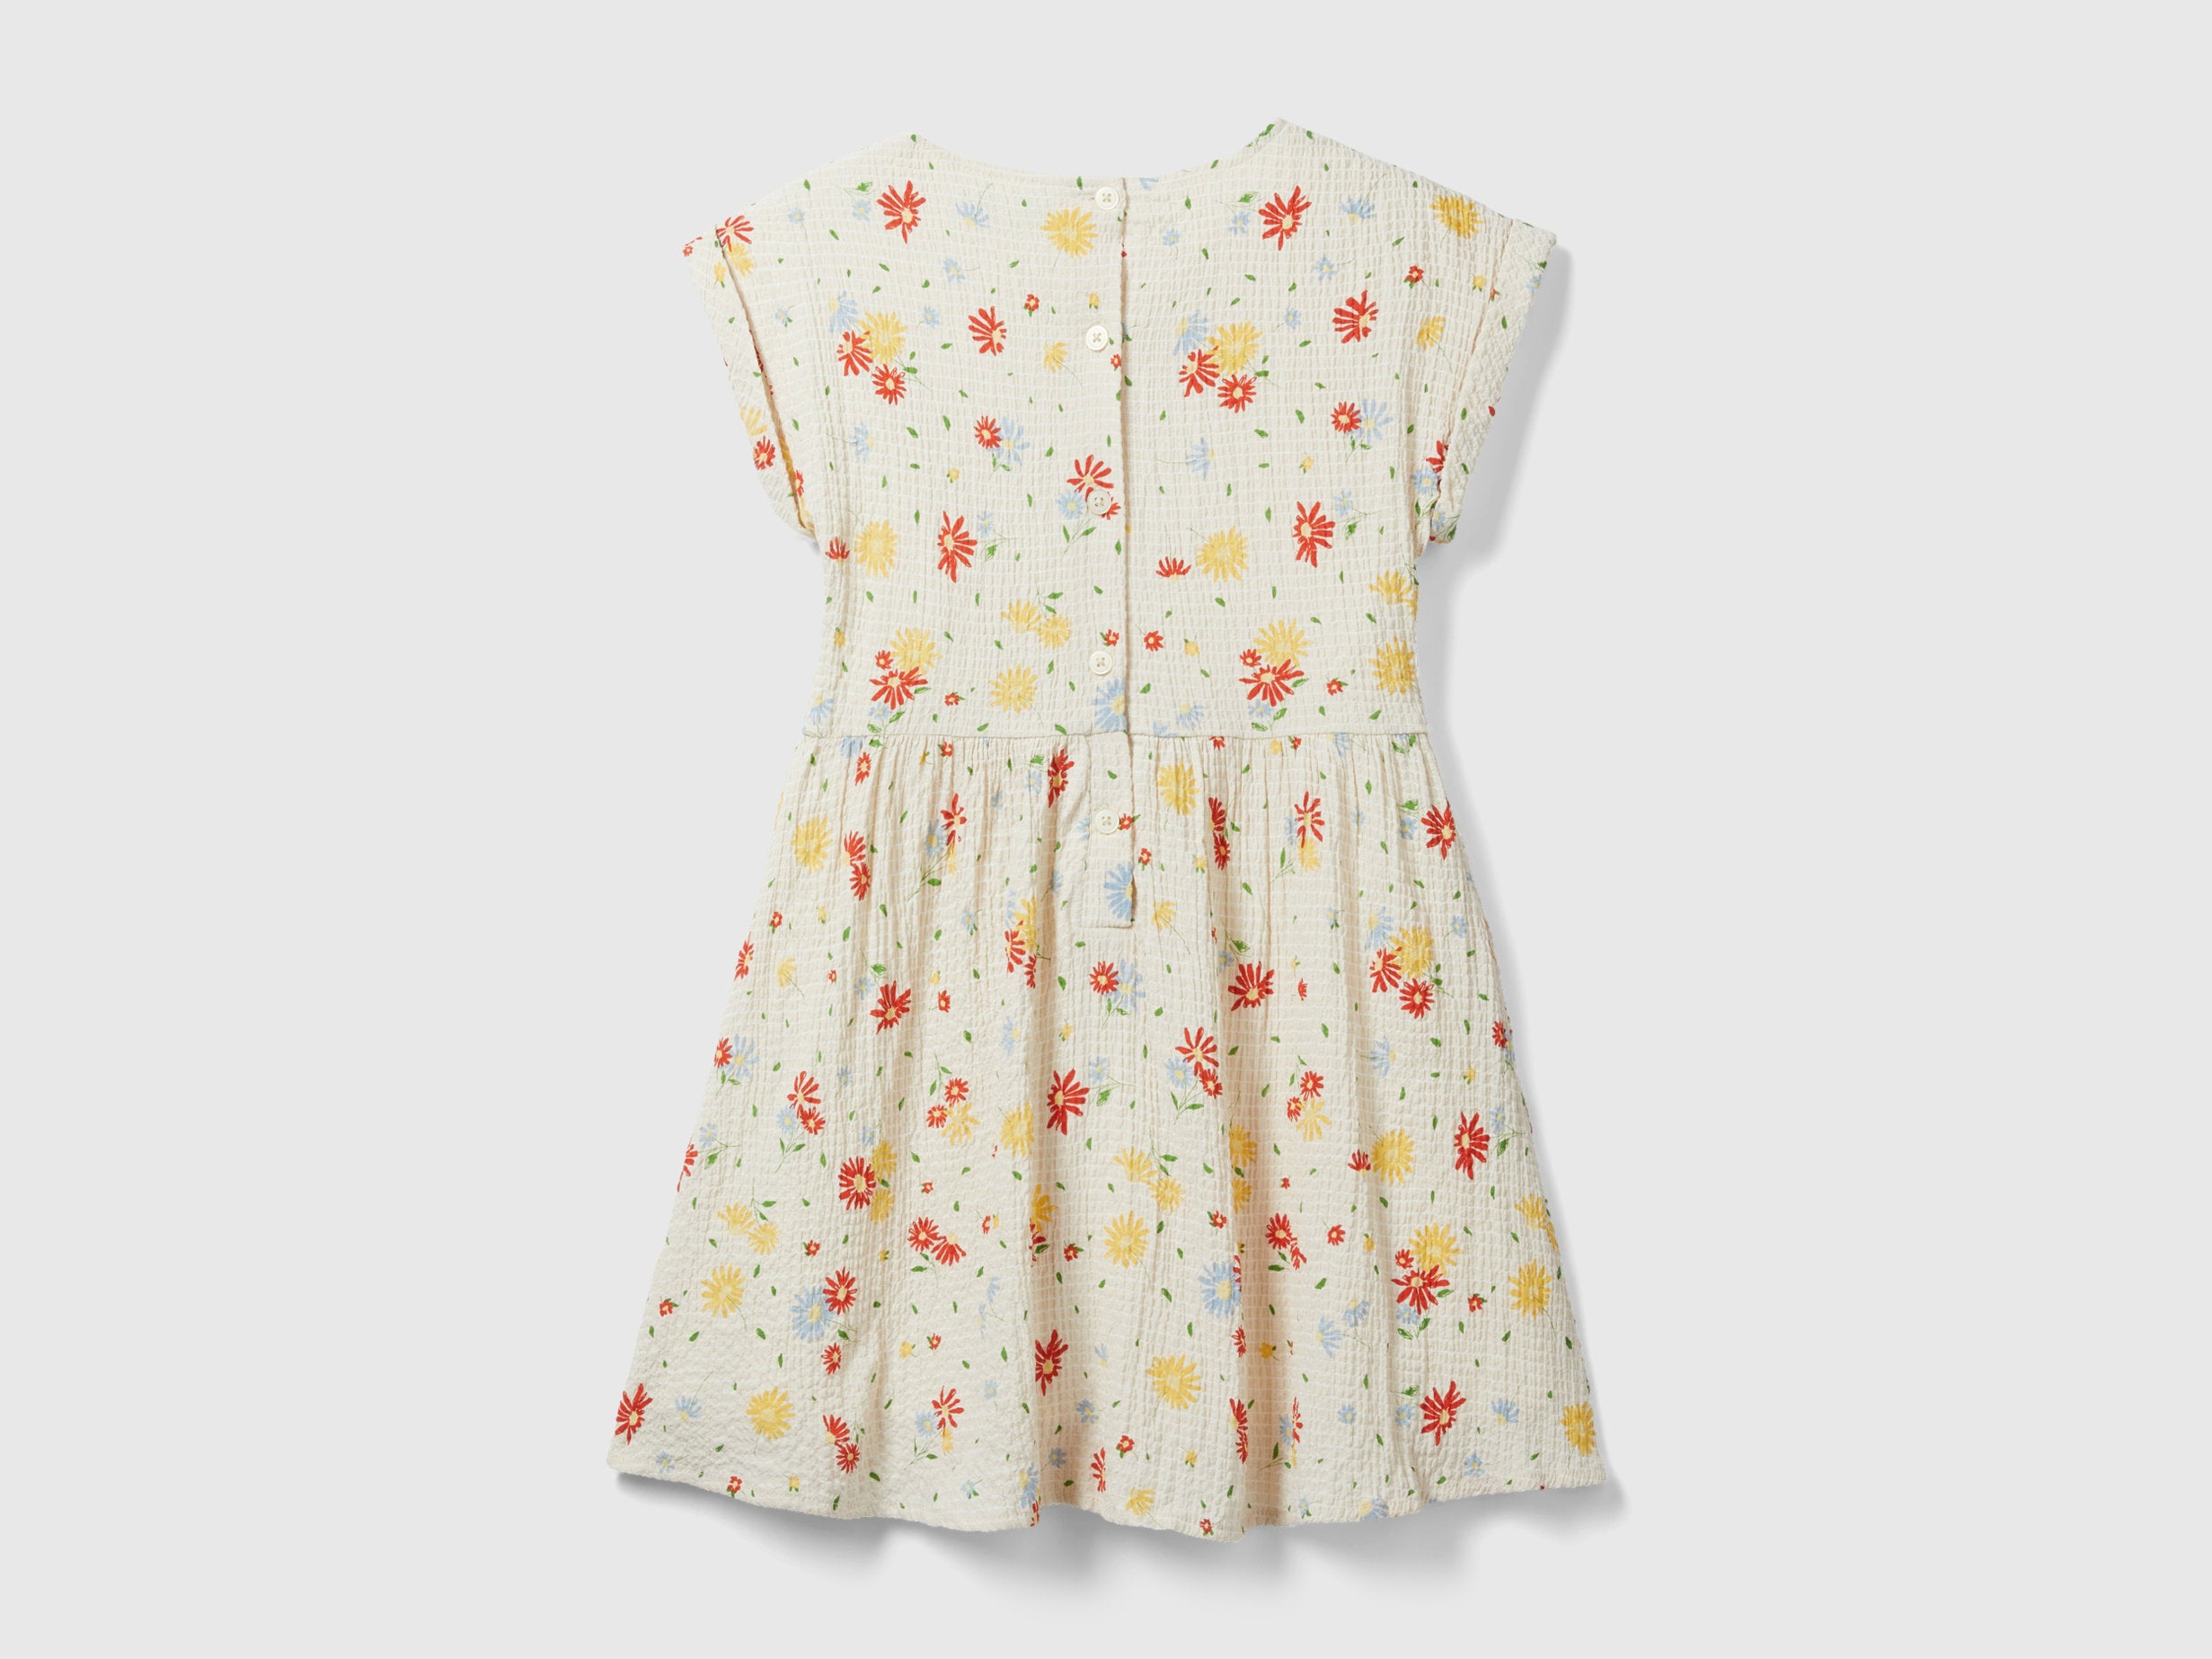 Short Dress With Floral Print_4RFGCV02A_66K_02